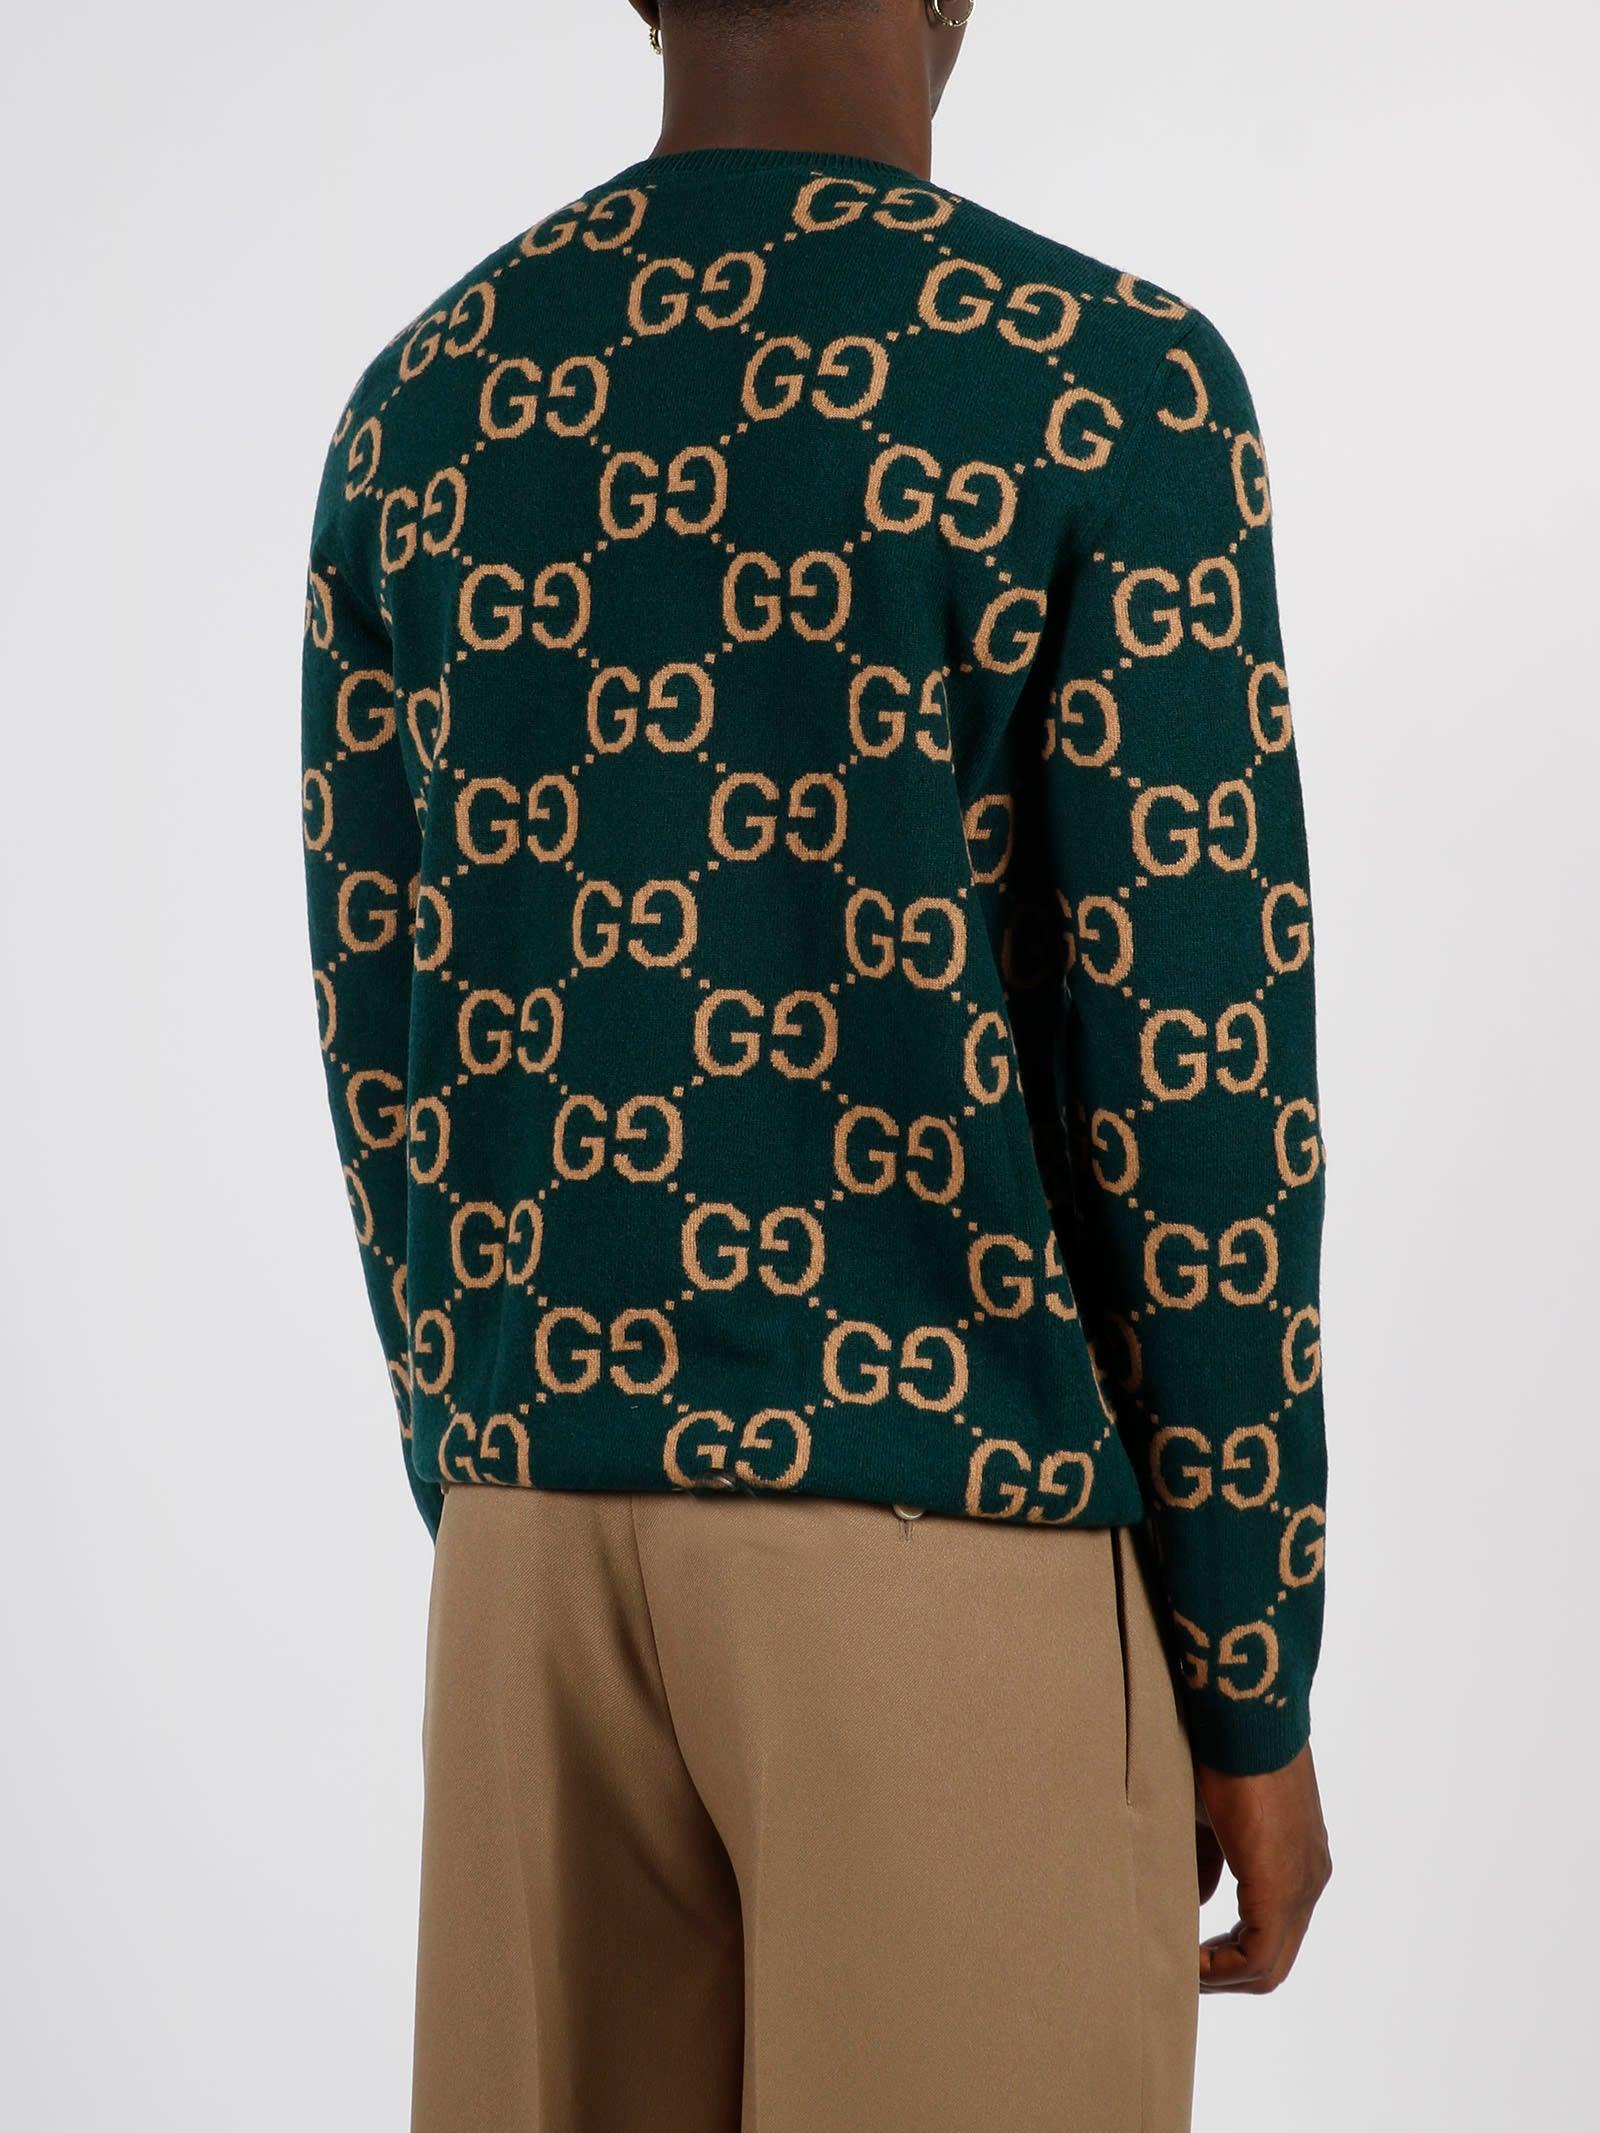 GG wool jacquard sweater in green